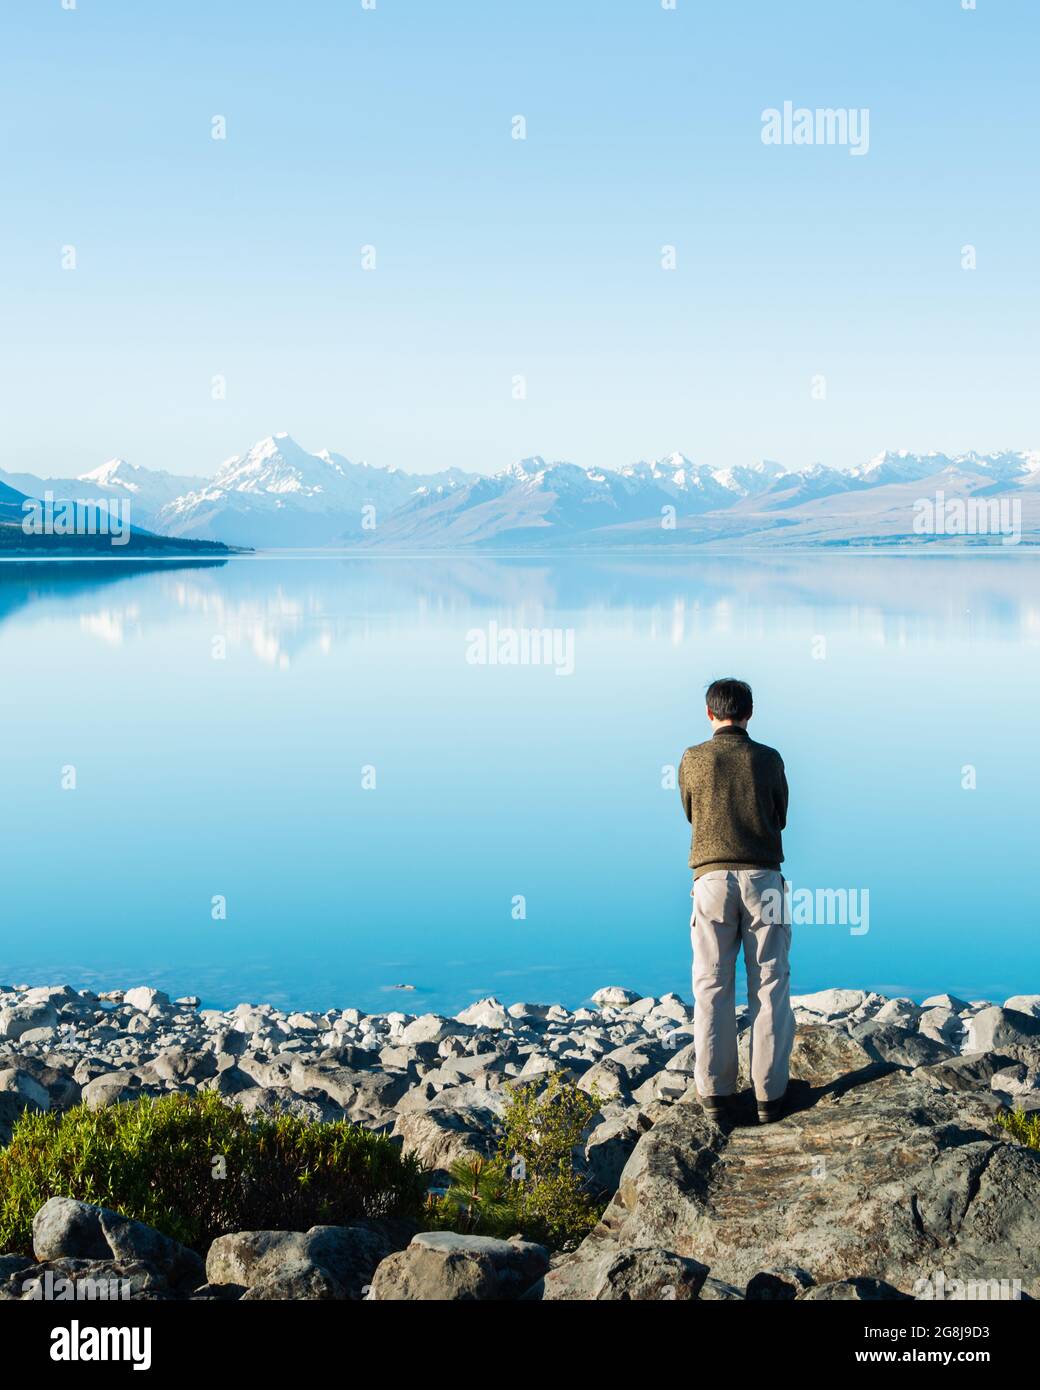 Mann, der am Ufer des Pukaki-Sees steht, tief in Gedanken, mit Mt Cook, der sich im klaren Wasser in der Ferne, South Island, widerspiegelt. Vertikales Format Stockfoto